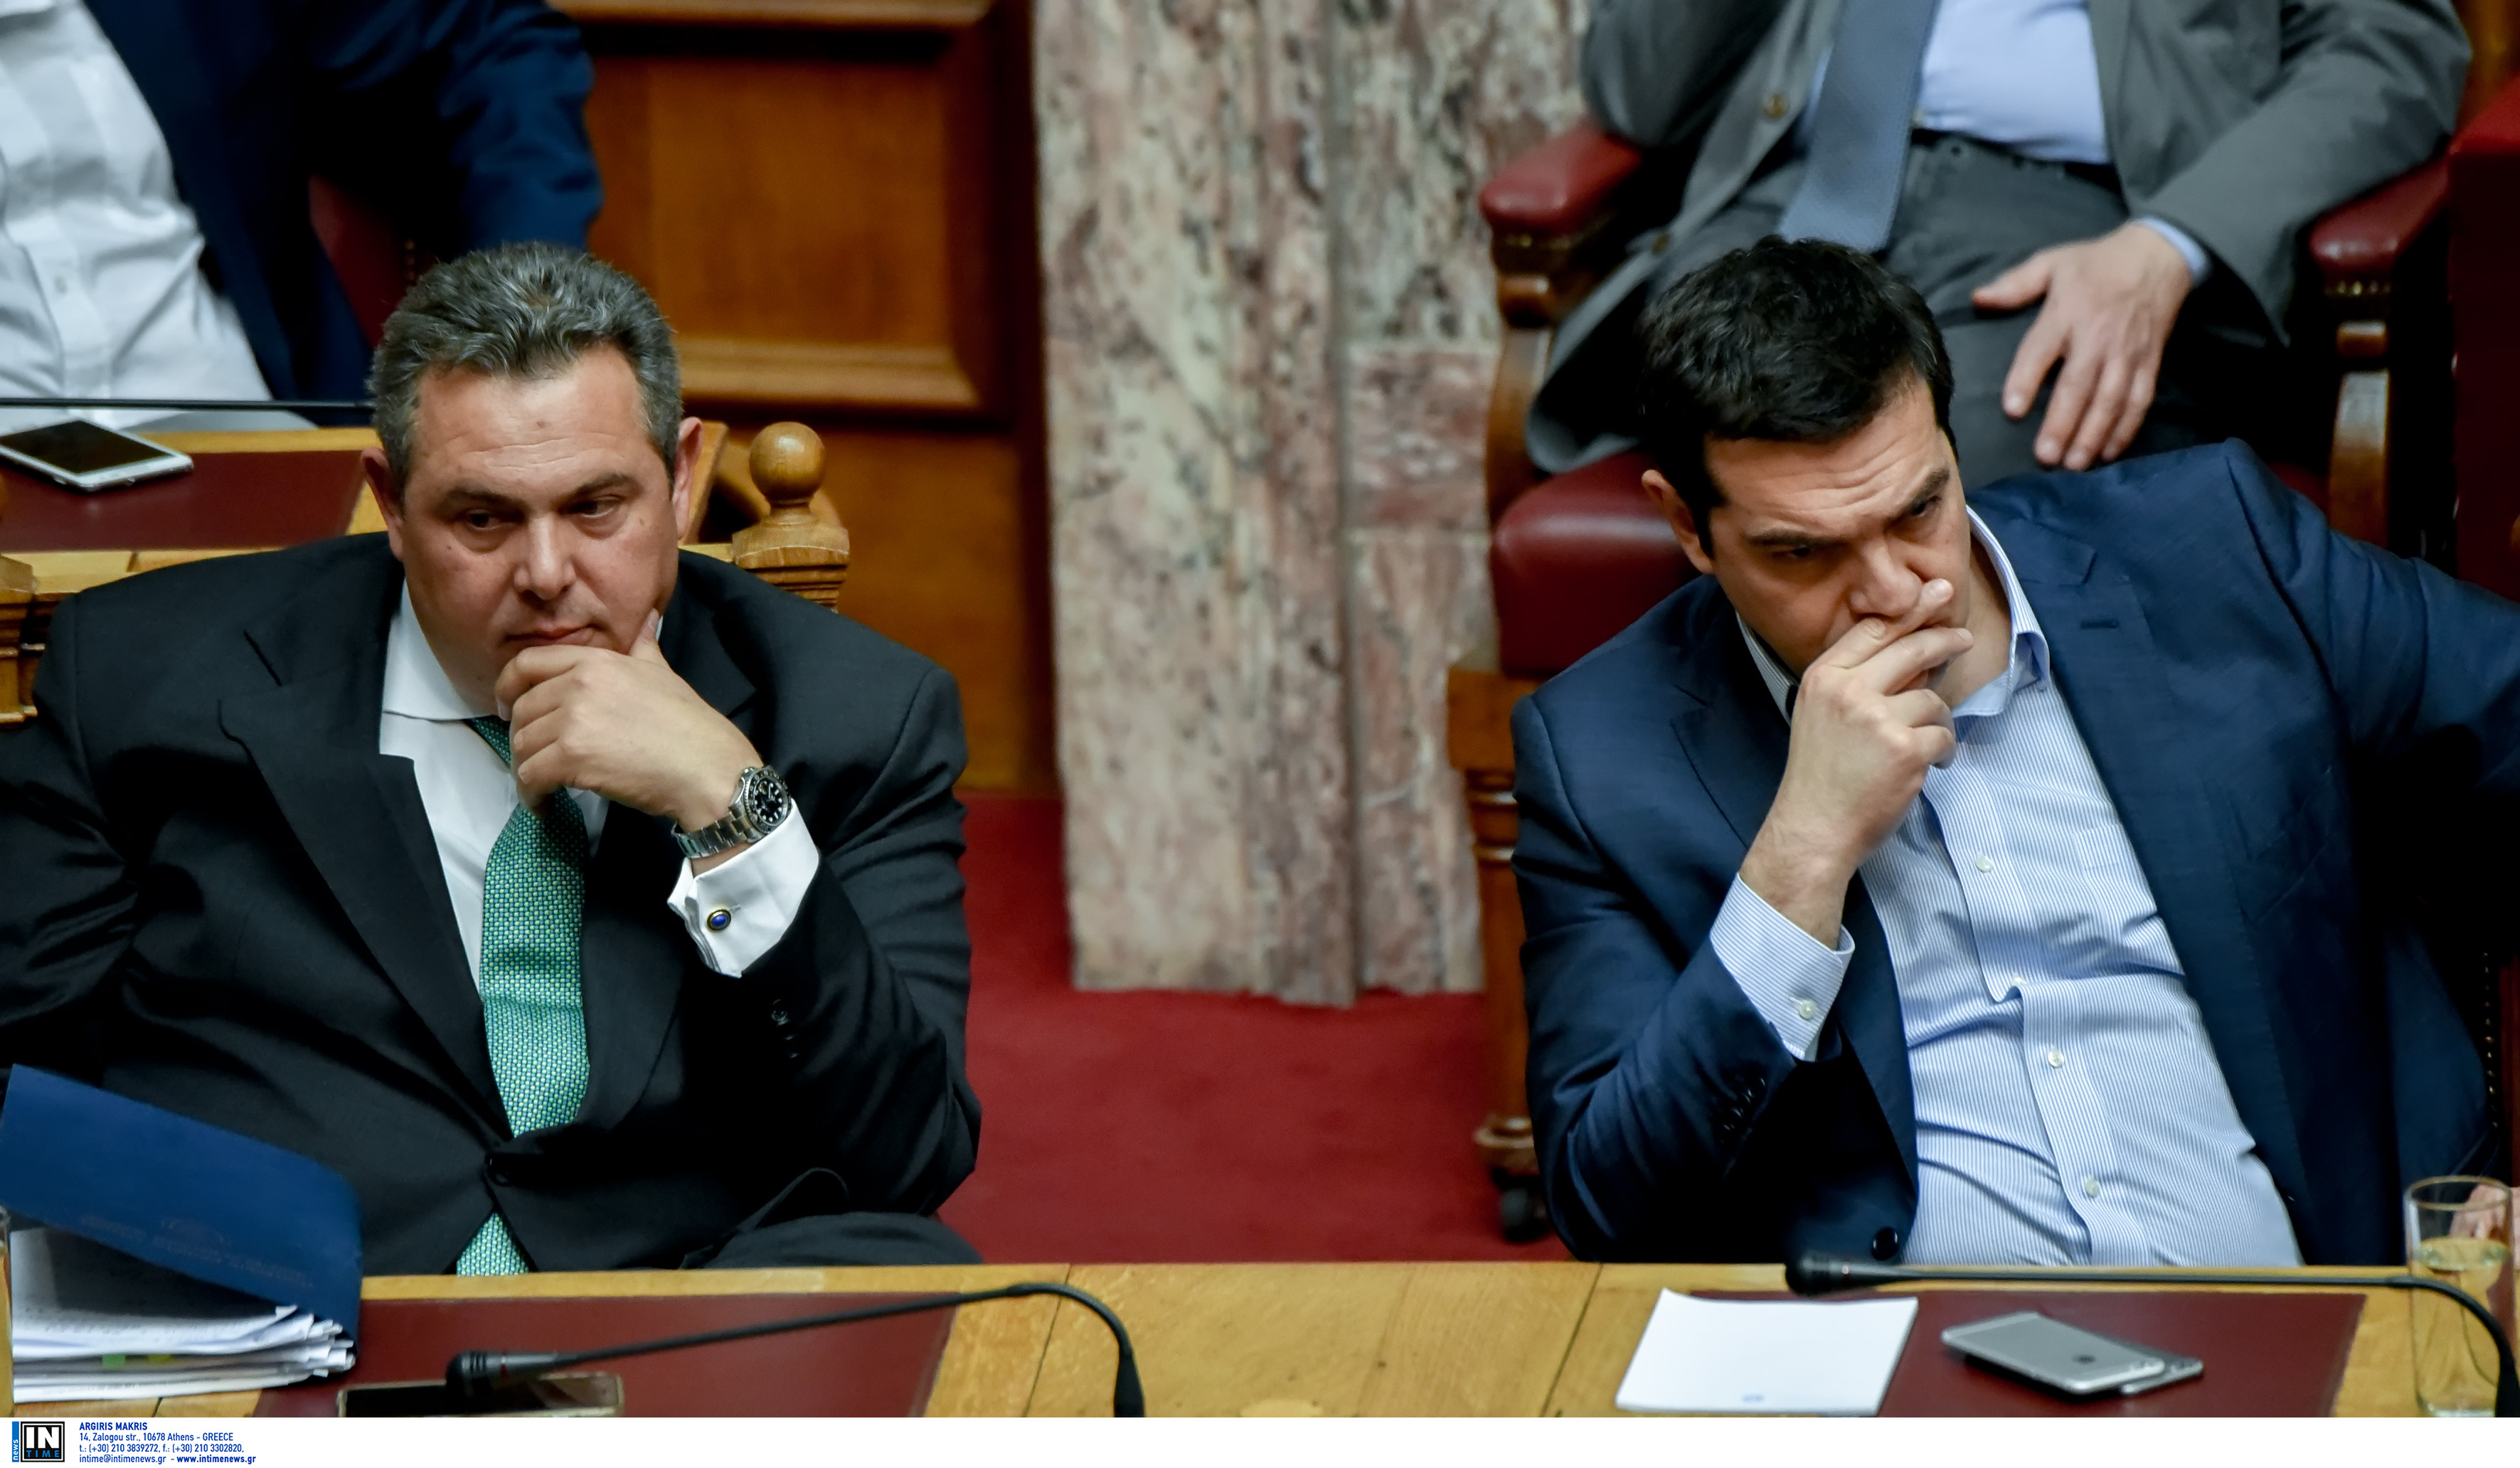 Πιο κοντά ΣΥΡΙΖΑ-ΑΝΕΛ παρά τις εκατέρωθεν ιδεολογικές υποχωρήσεις